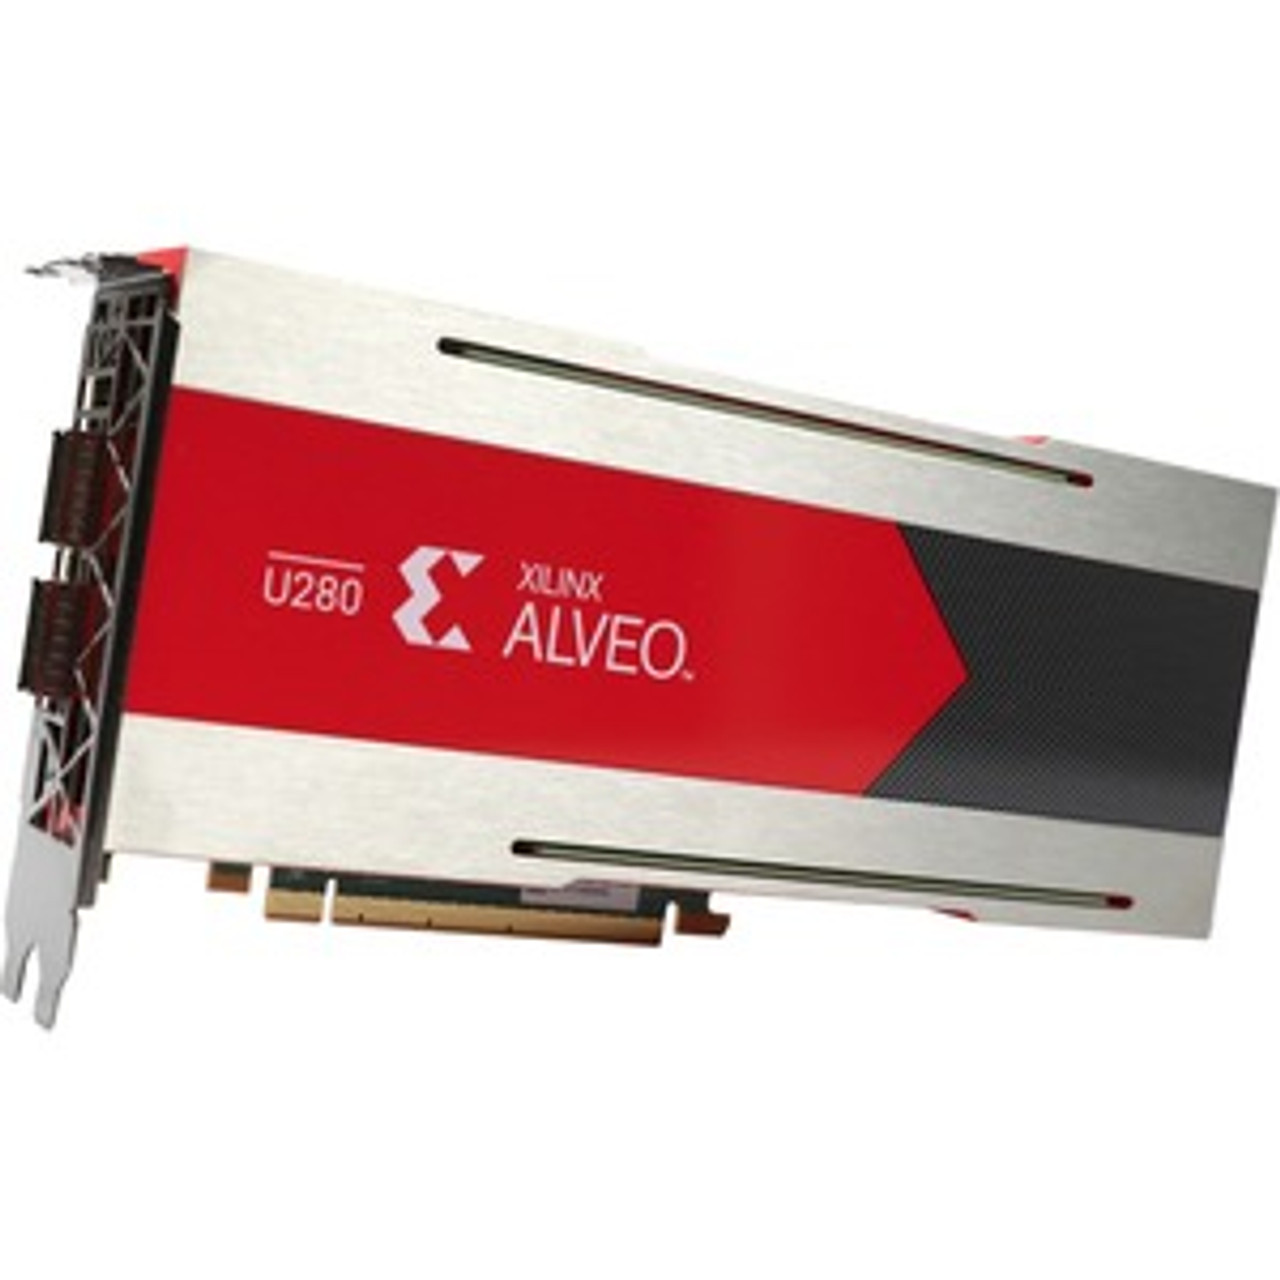 Xilinx Alveo U280 Data Center Accelerator Card ACCELERATOR CARD PASSIVE COOLING